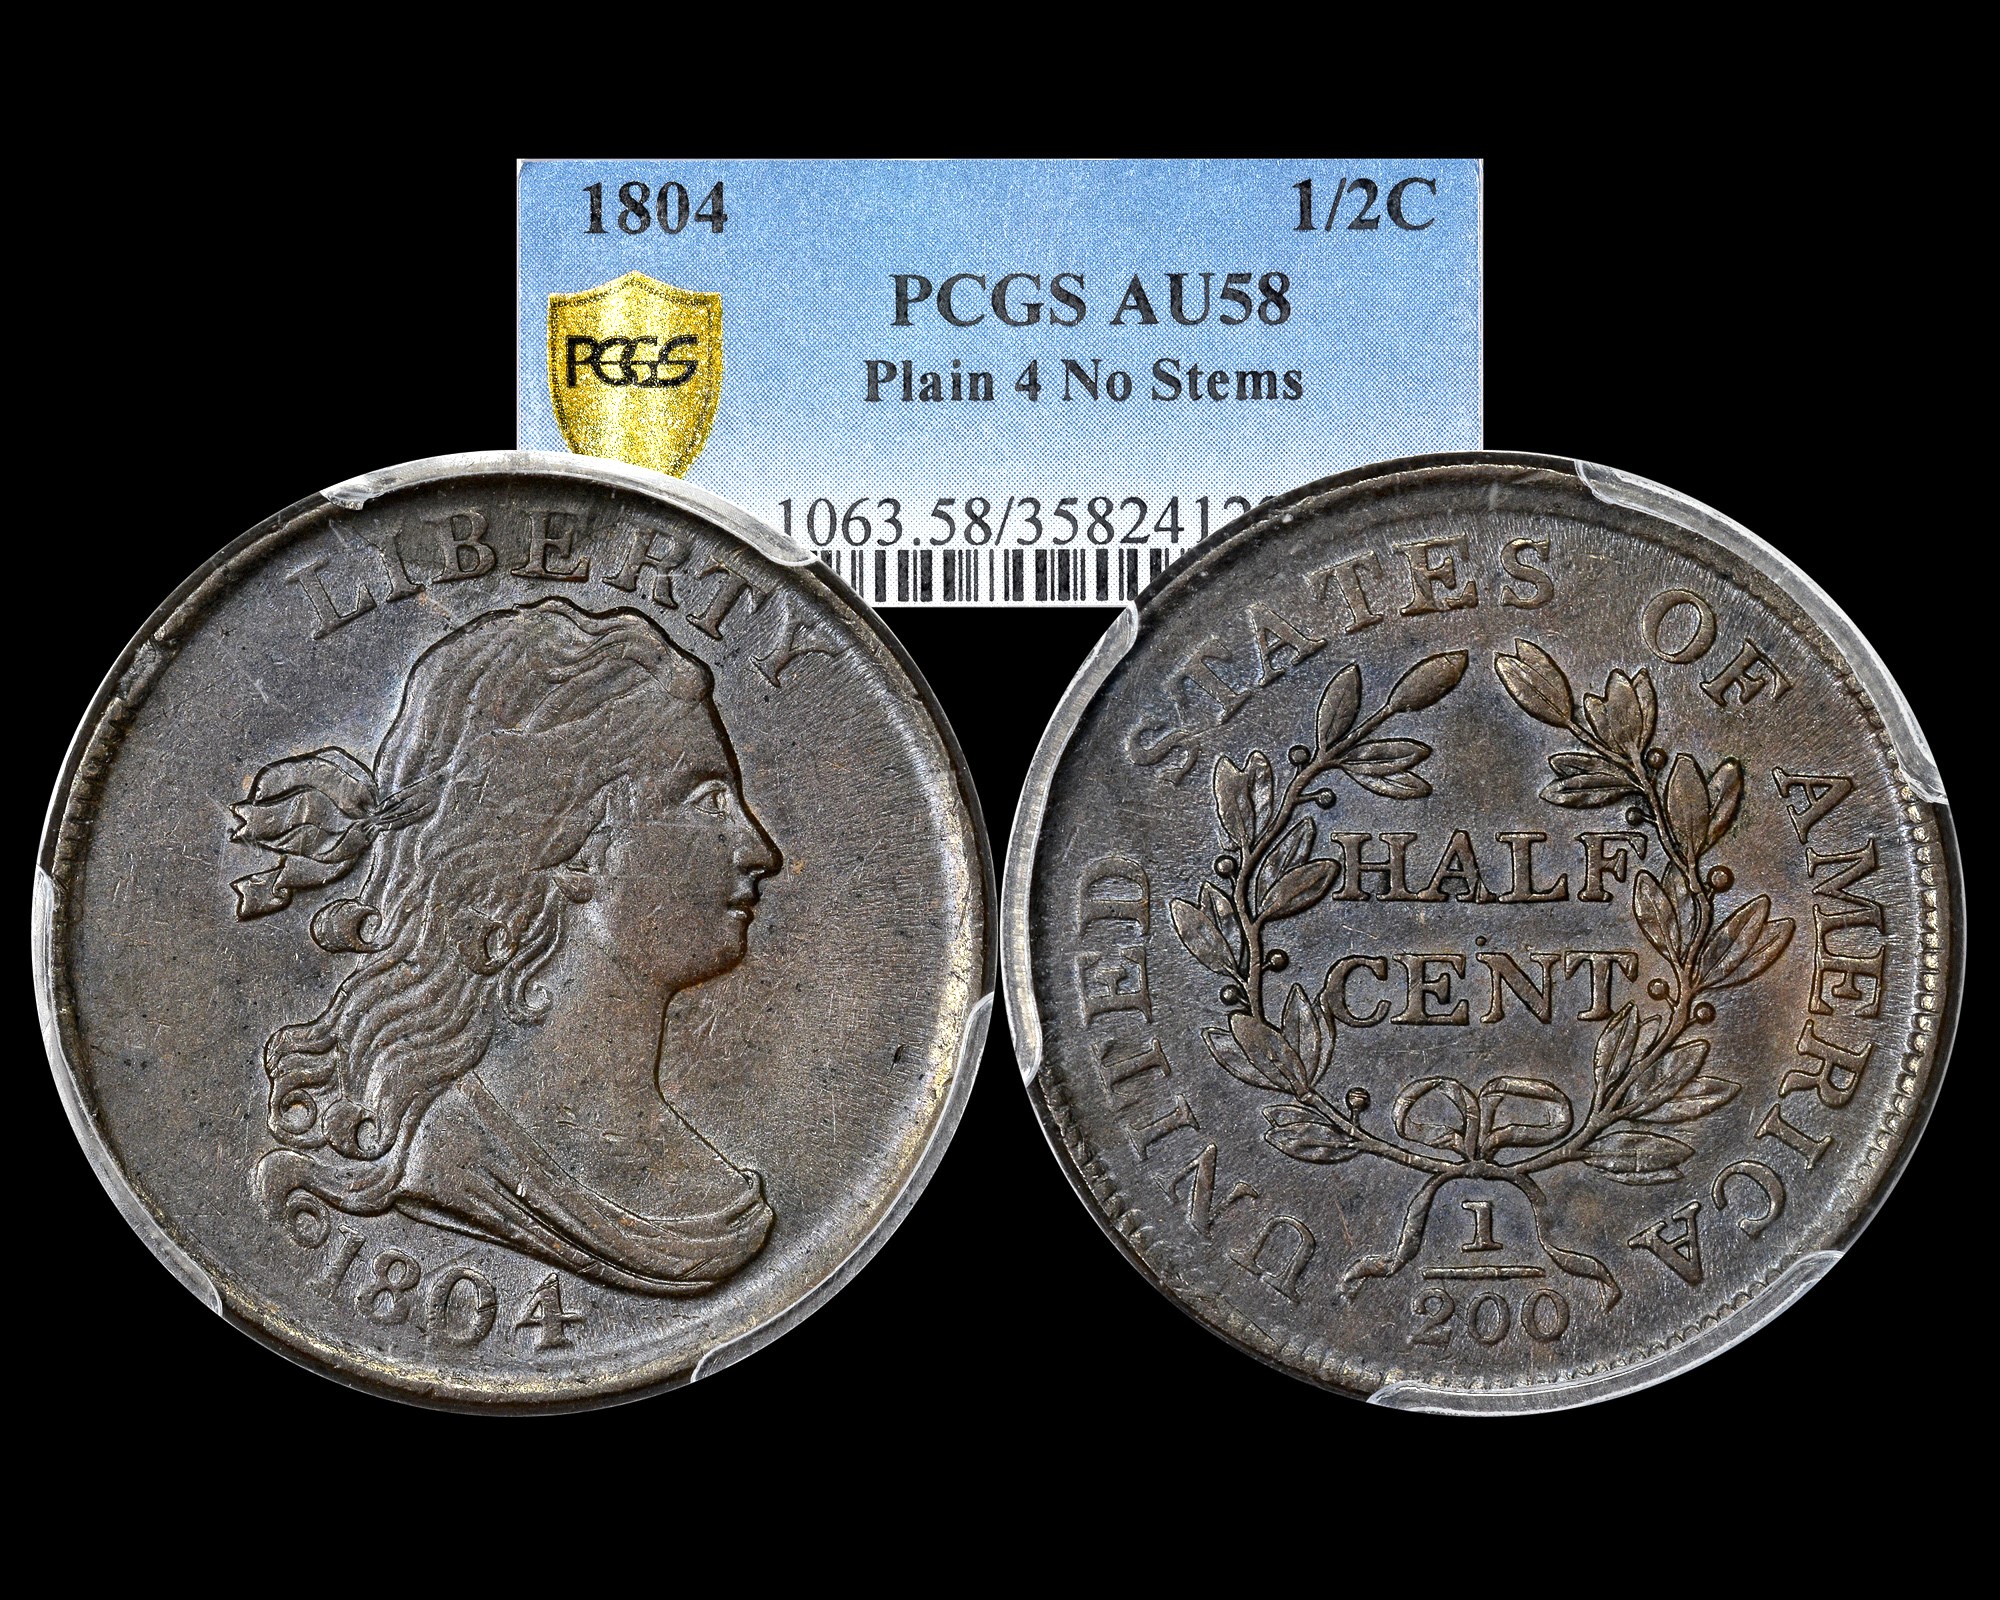 1804 1/2C Draped Bust Half Cent (Plain 4 No Stems) PCGS AU58 - The